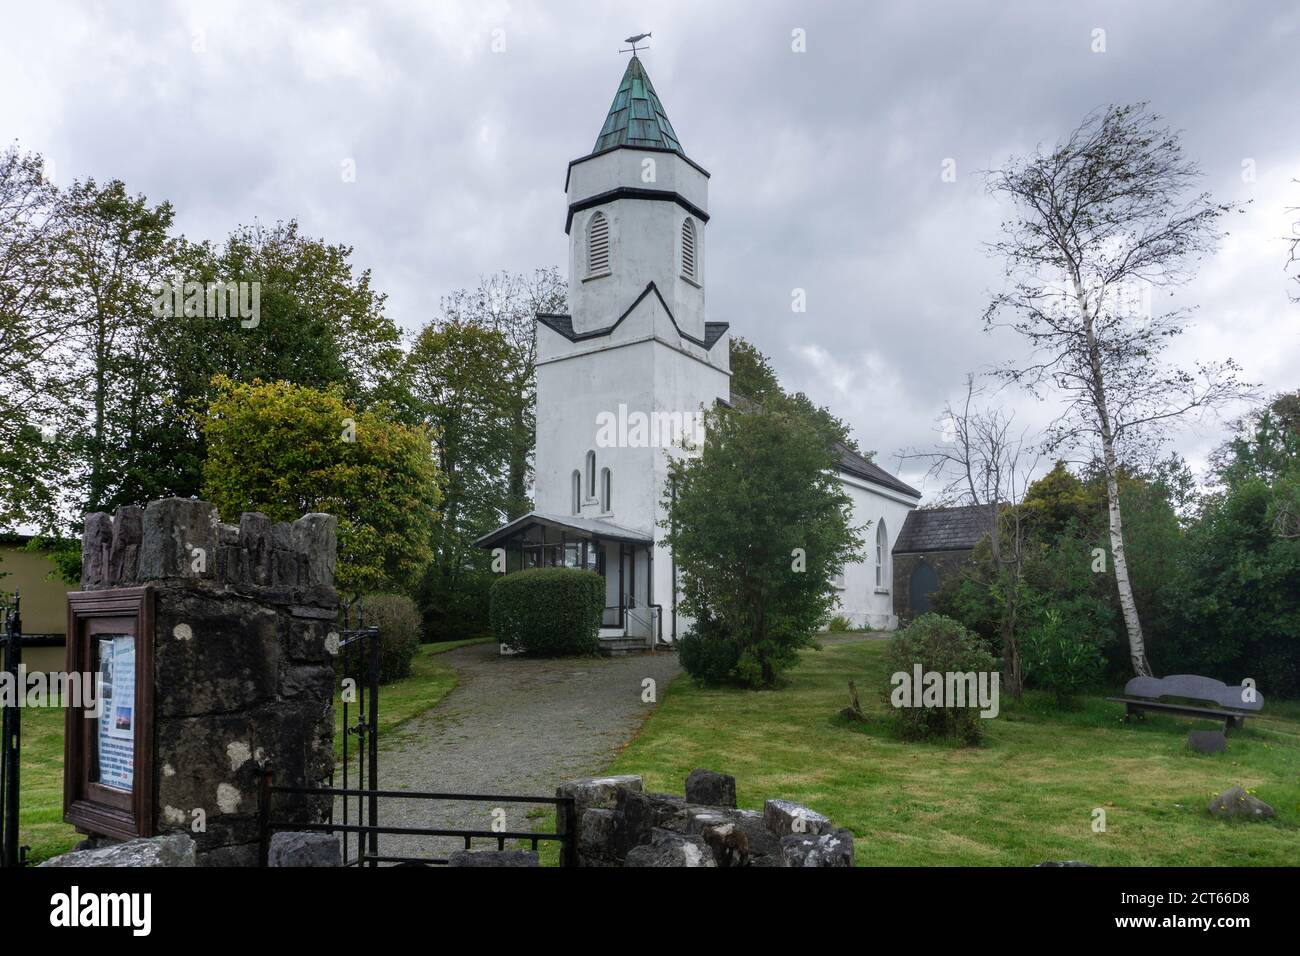 Die Kirche von Irland, Kirche der Verklärung, in Sneem, Grafschaft Kerry, Irland. Gebaut C 1810. Stockfoto